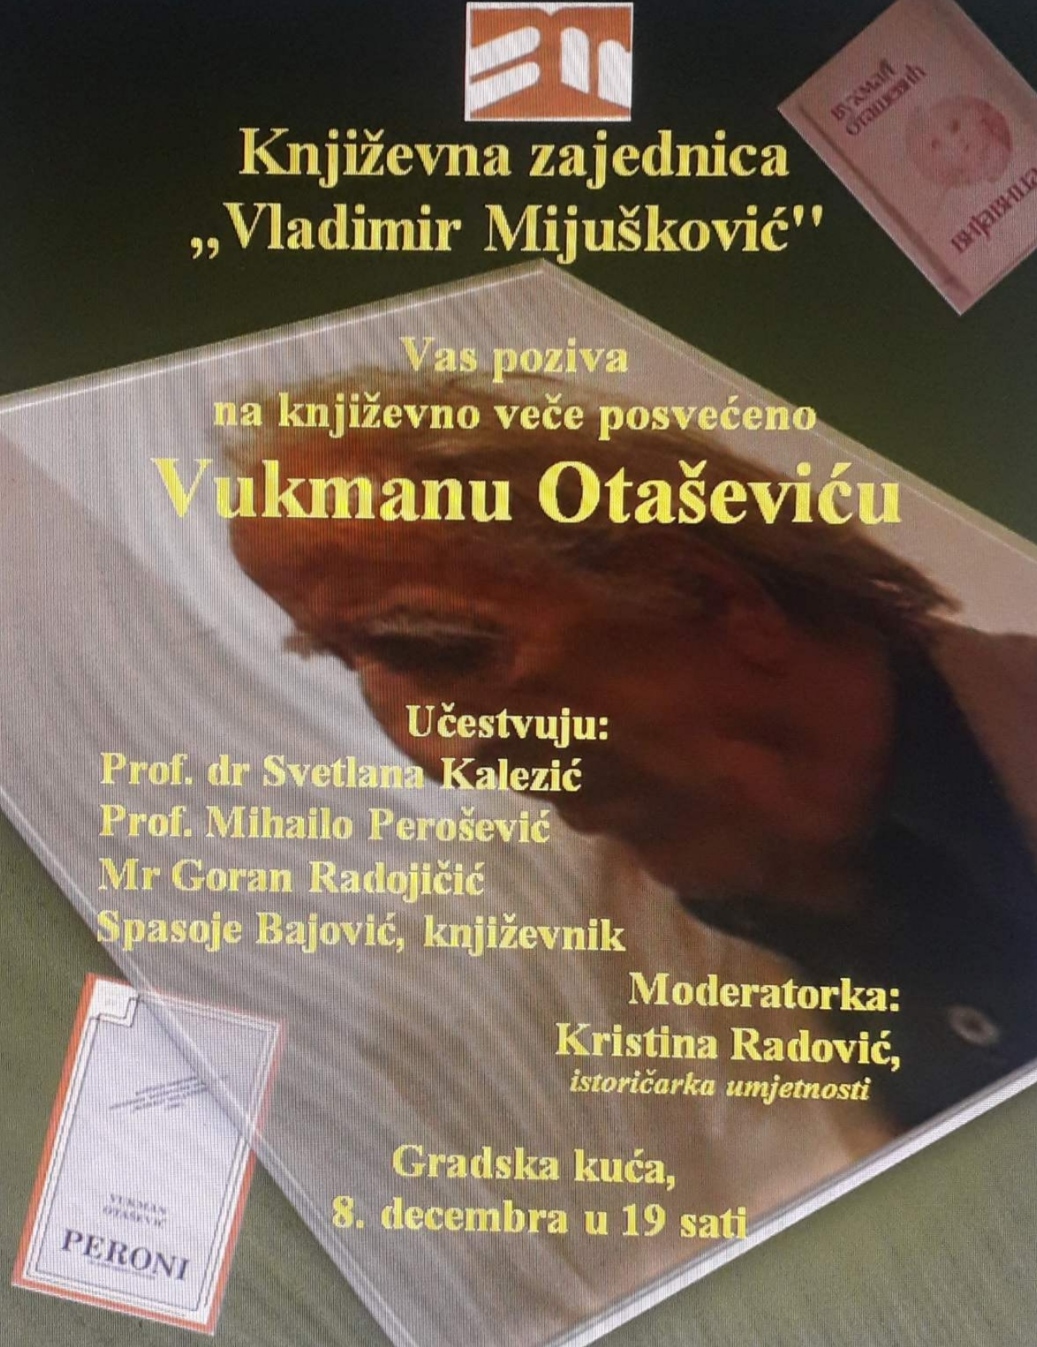 Književno veče posvećeno Vukmanu Otaševiću